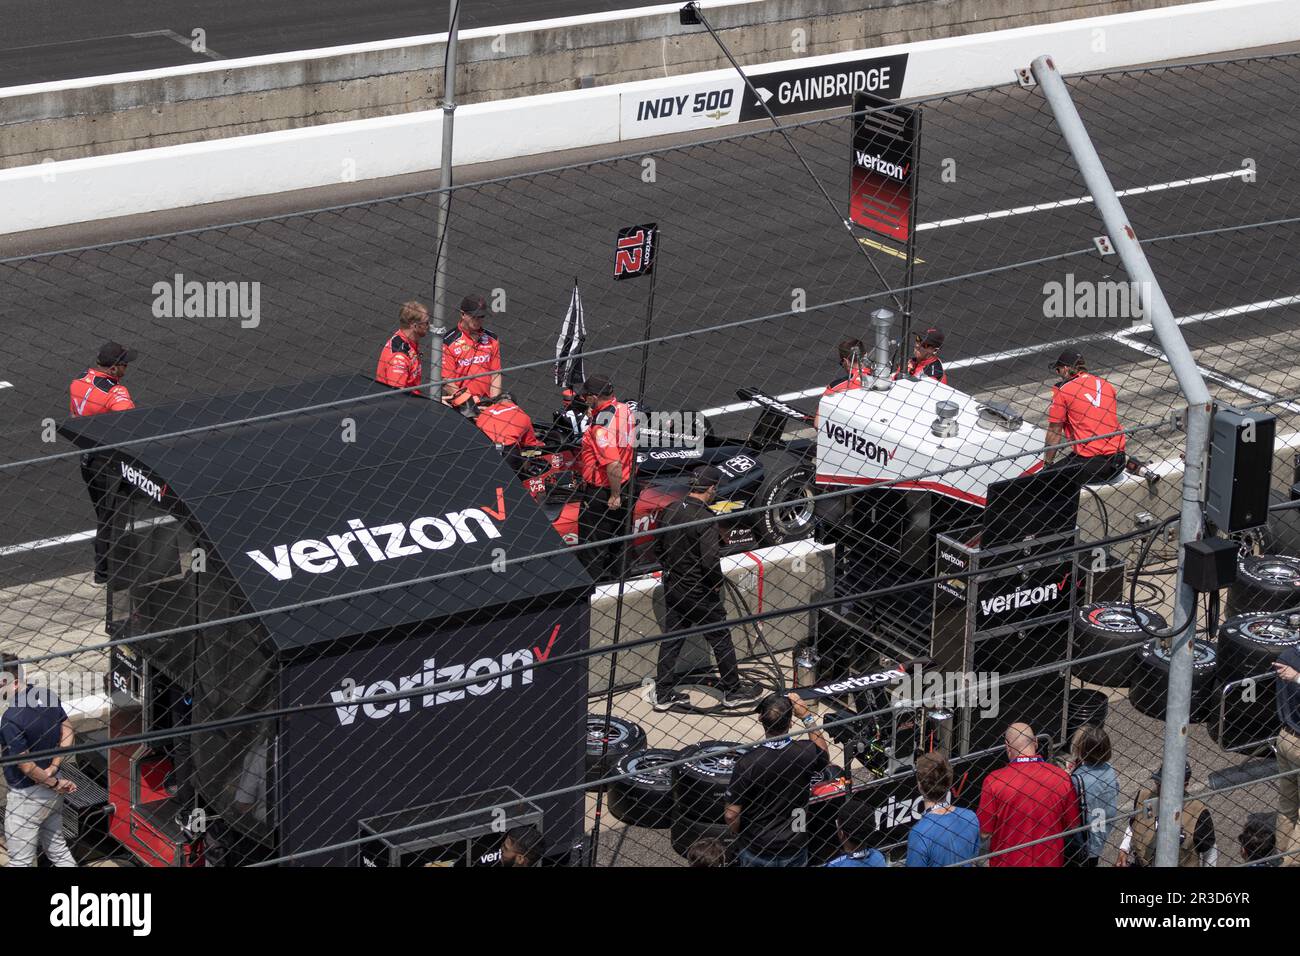 Indianapolis - circa Mai 2023: Verizon und sein 5G-Logo auf von IndyCar gesponserten Geräten. Verizon bietet drahtlose, Glasfaser- und 5G-Kommunikation. Stockfoto